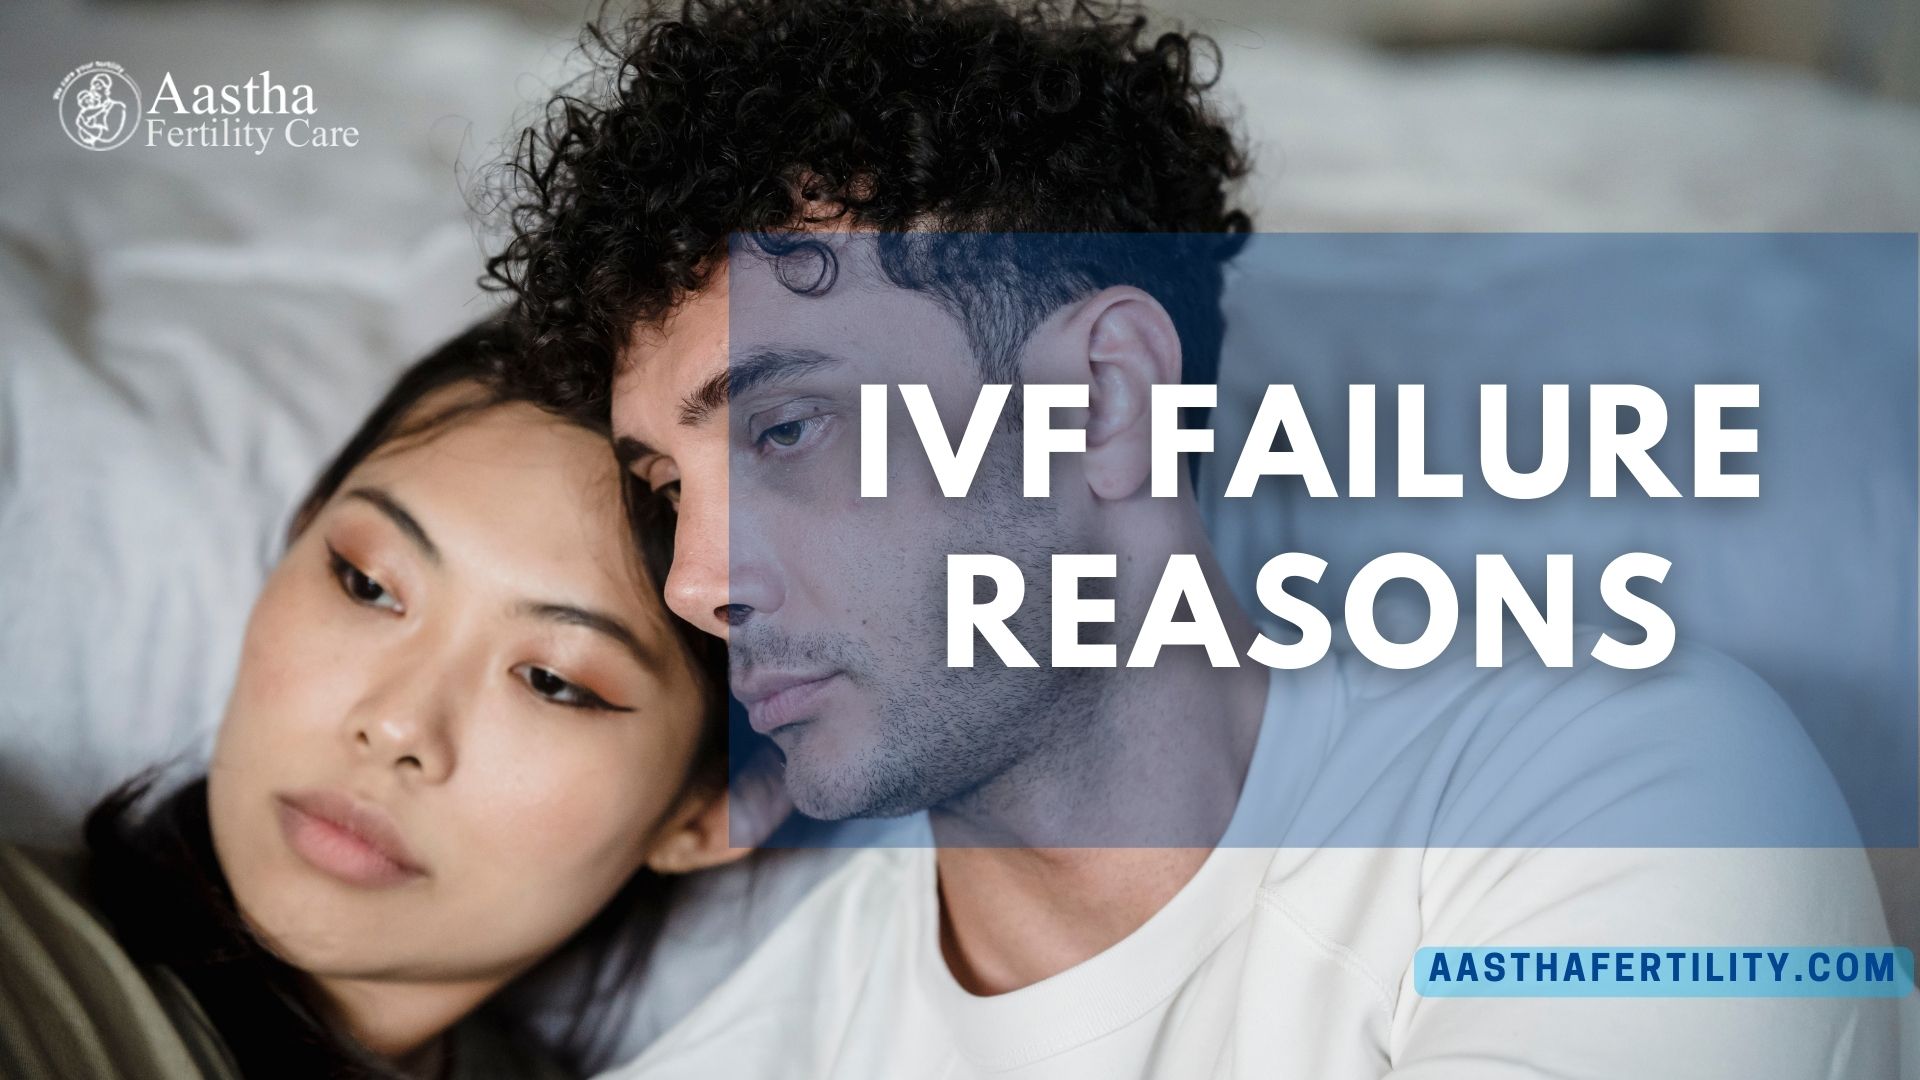 IVF Failure Reasons